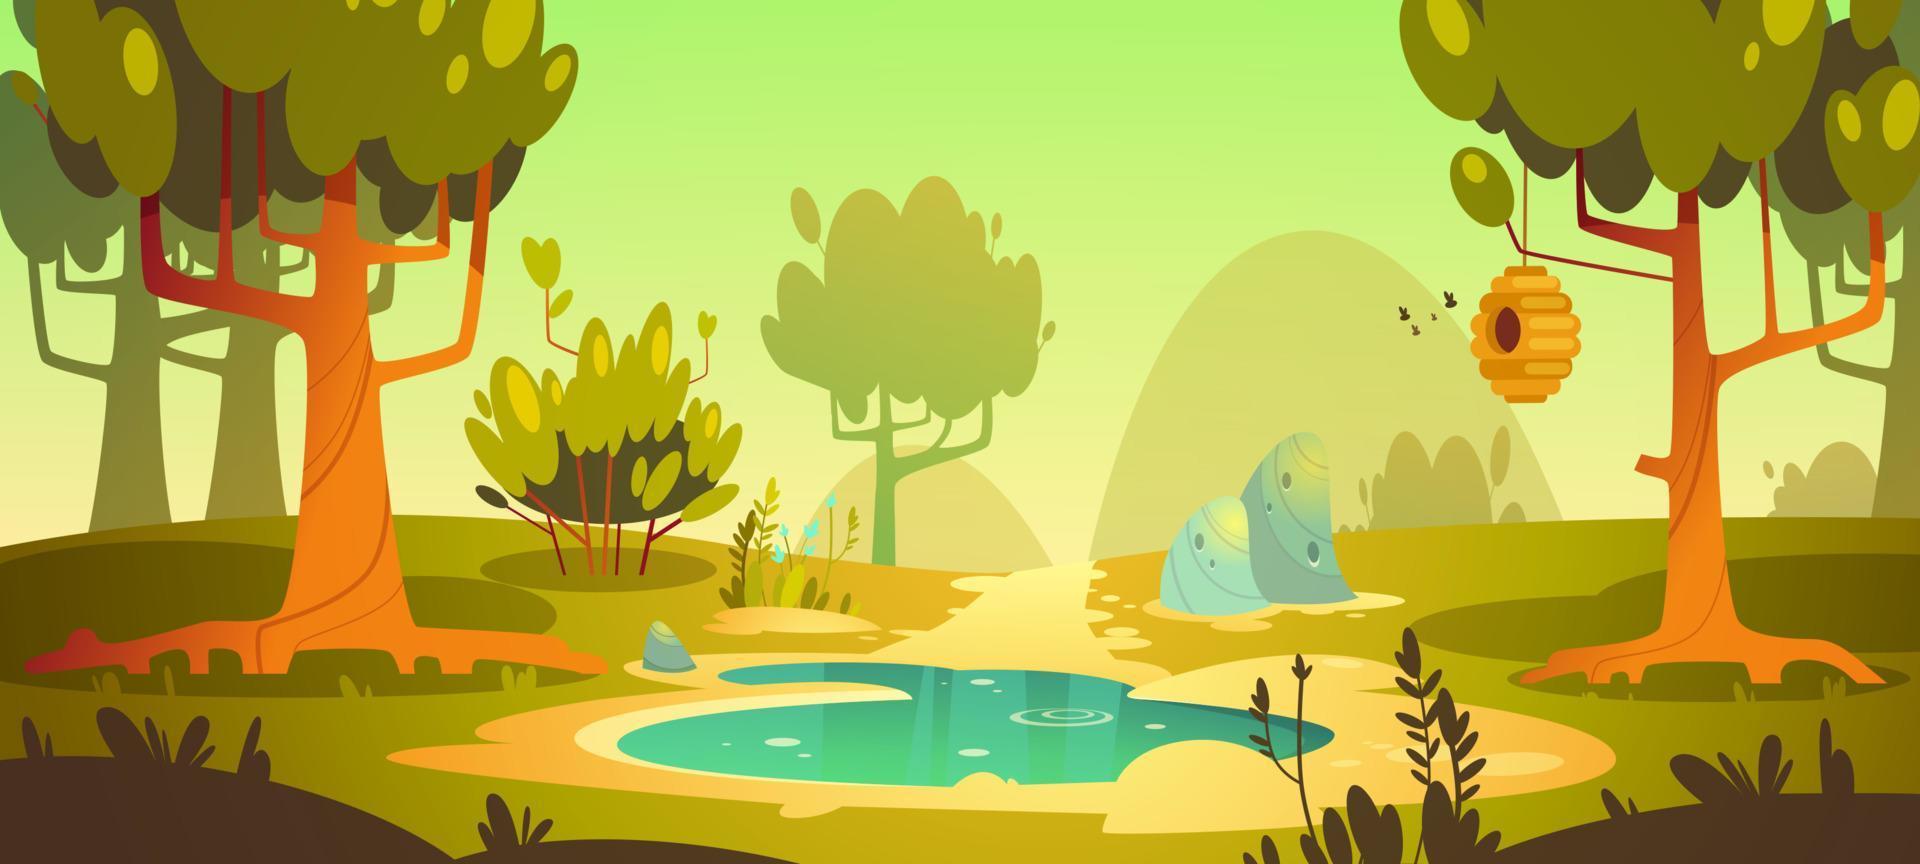 fundo da floresta dos desenhos animados com lagoa, pântano, trilha vetor